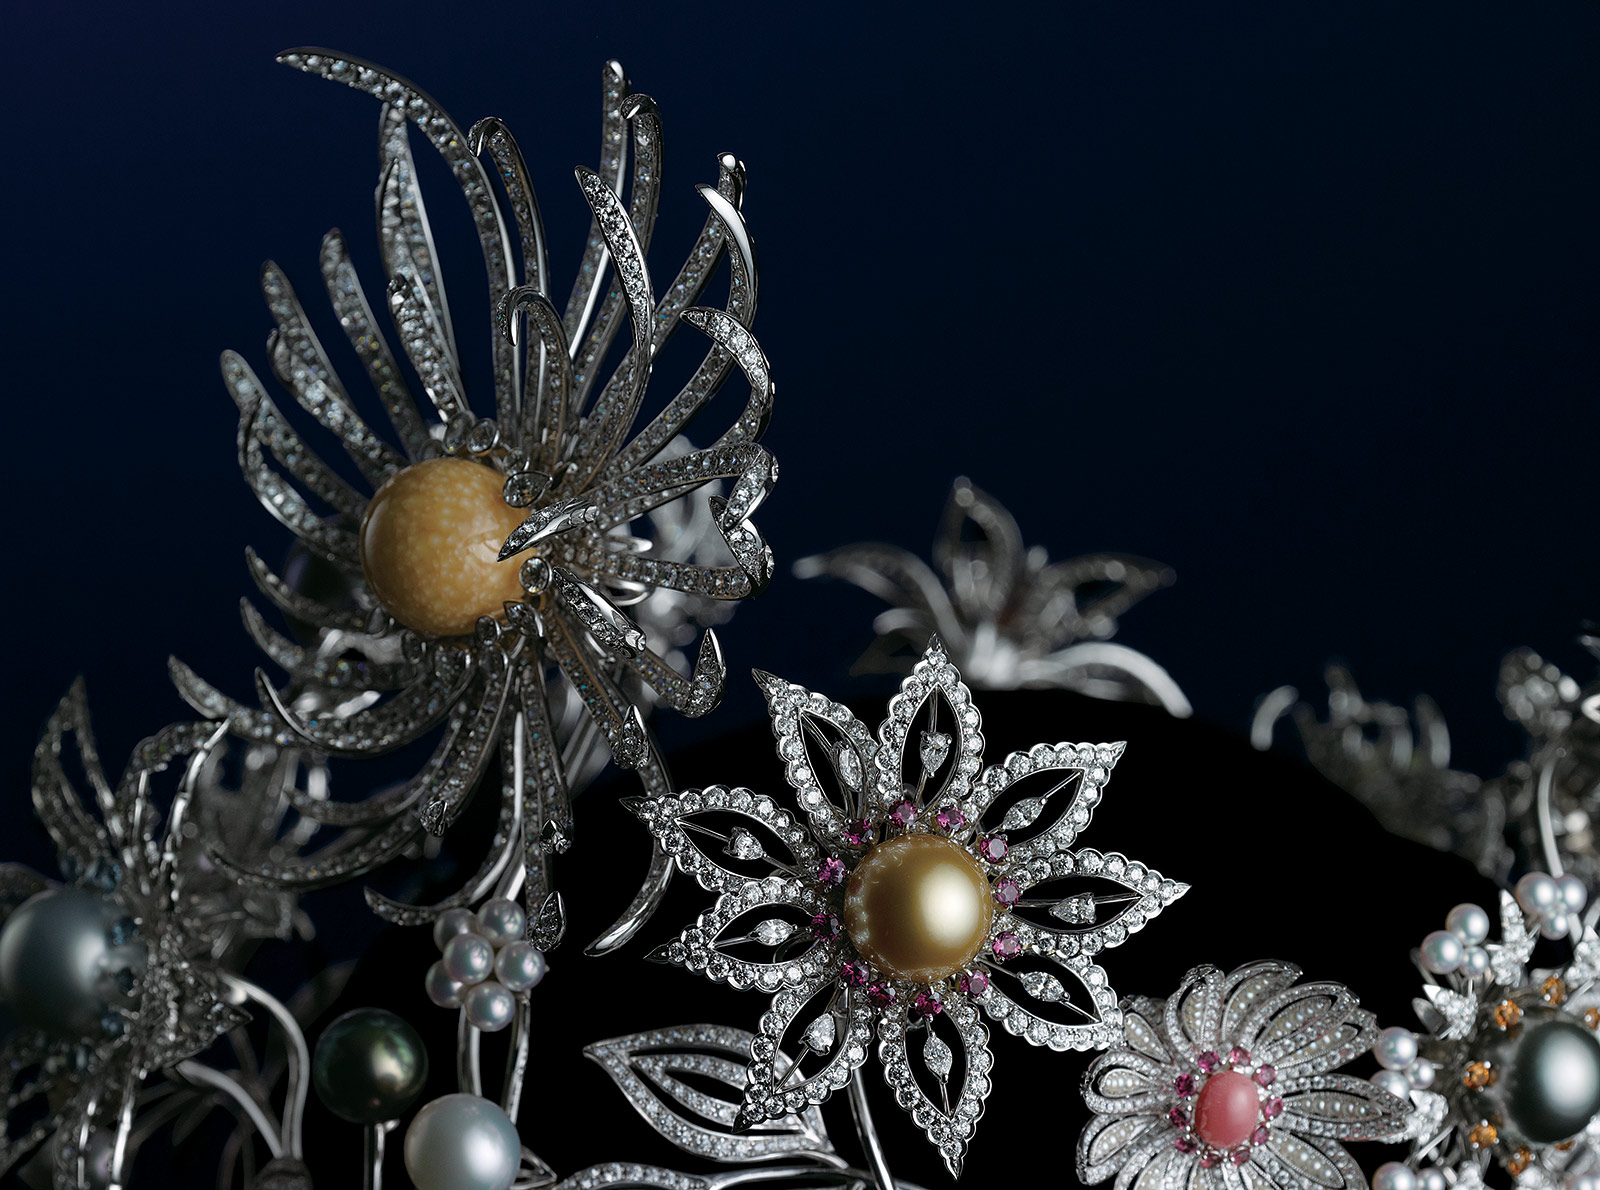 Праздничный дизайн Dreams & Pearls представляет собой букет из 12 цветков, украшенных редкой жемчужиной из разных концов мира: мело, конк, черным, золотым и белым южноморским жемчугом, а также акойя